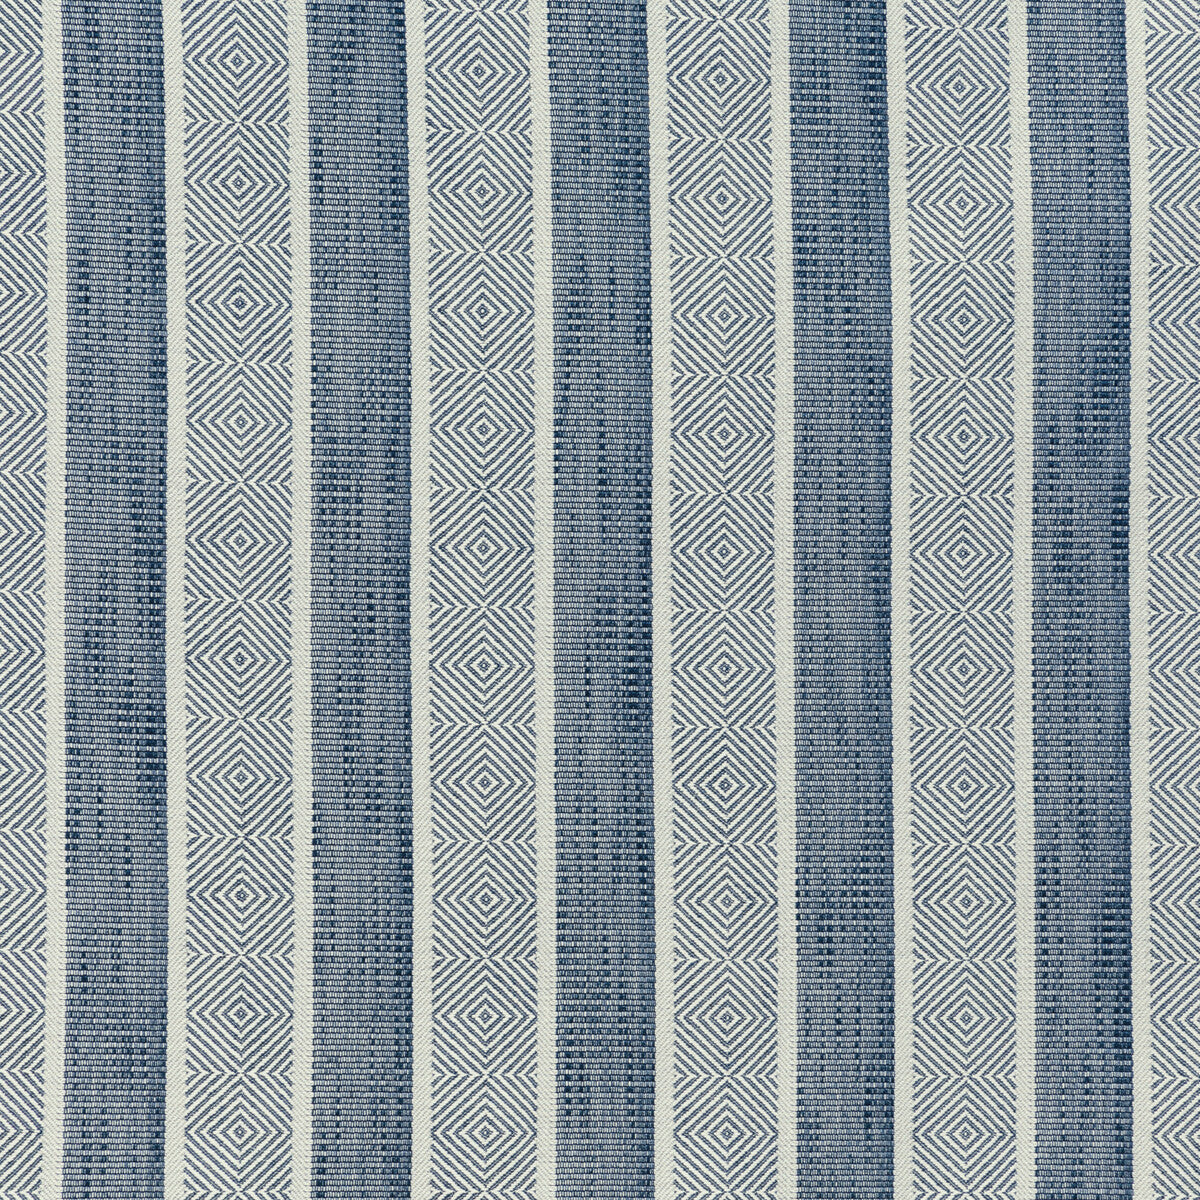 Kravet Design fabric in 36287-50 color - pattern 36287.50.0 - by Kravet Design